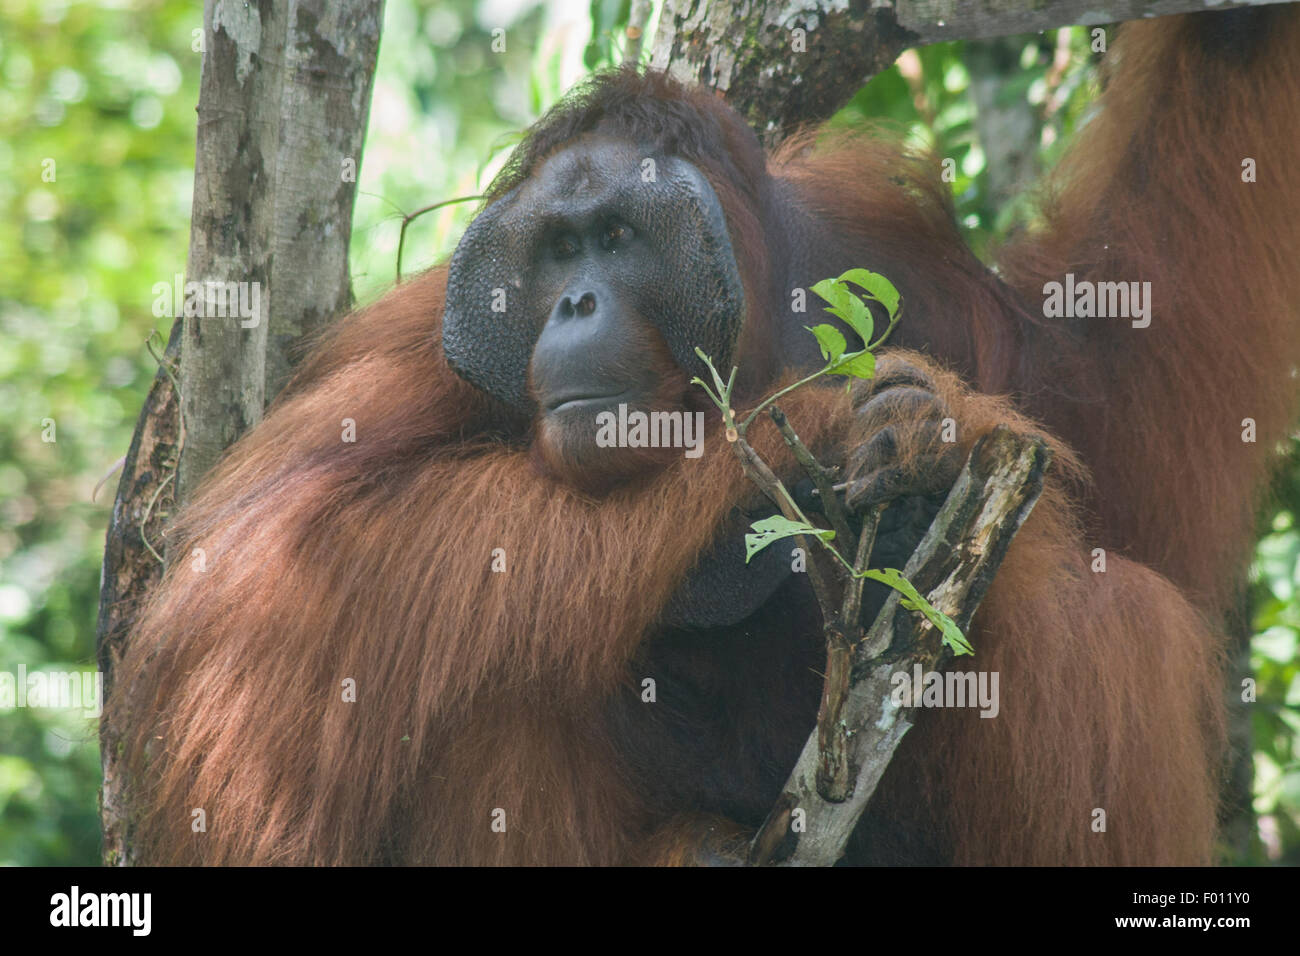 Un grande orangutan maschio con la guancia prominente pastiglie, custodia di gola, e capelli lunghi caratteristica dei maschi dominanti. Foto Stock